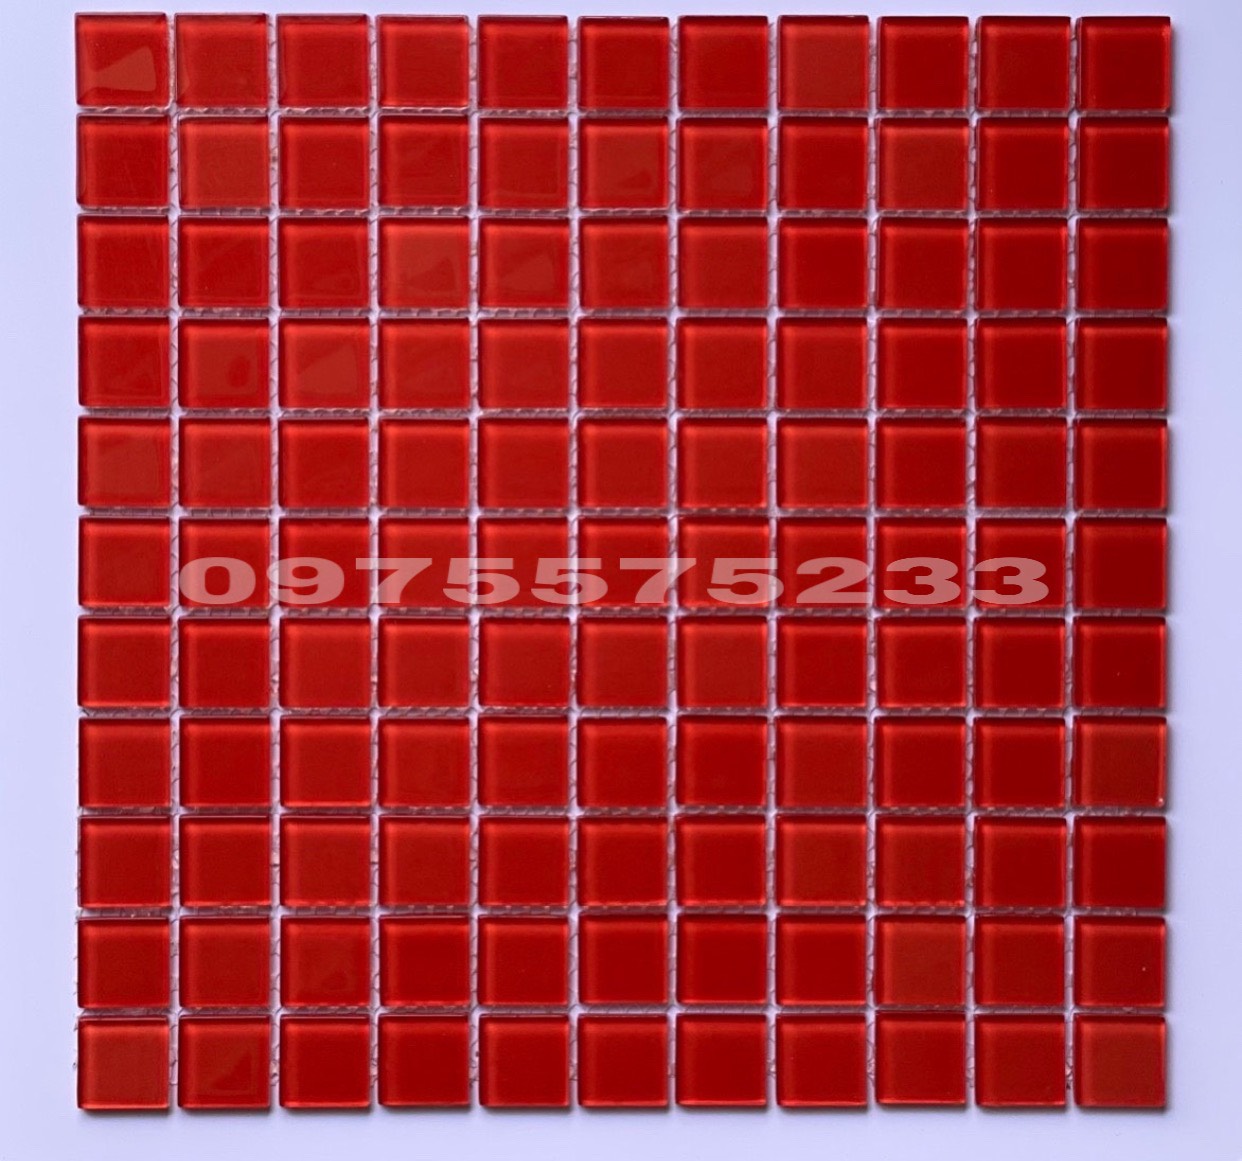 Mẫu gạch mosaic thủy tinh 30x30 màu đỏ bóng đẹp